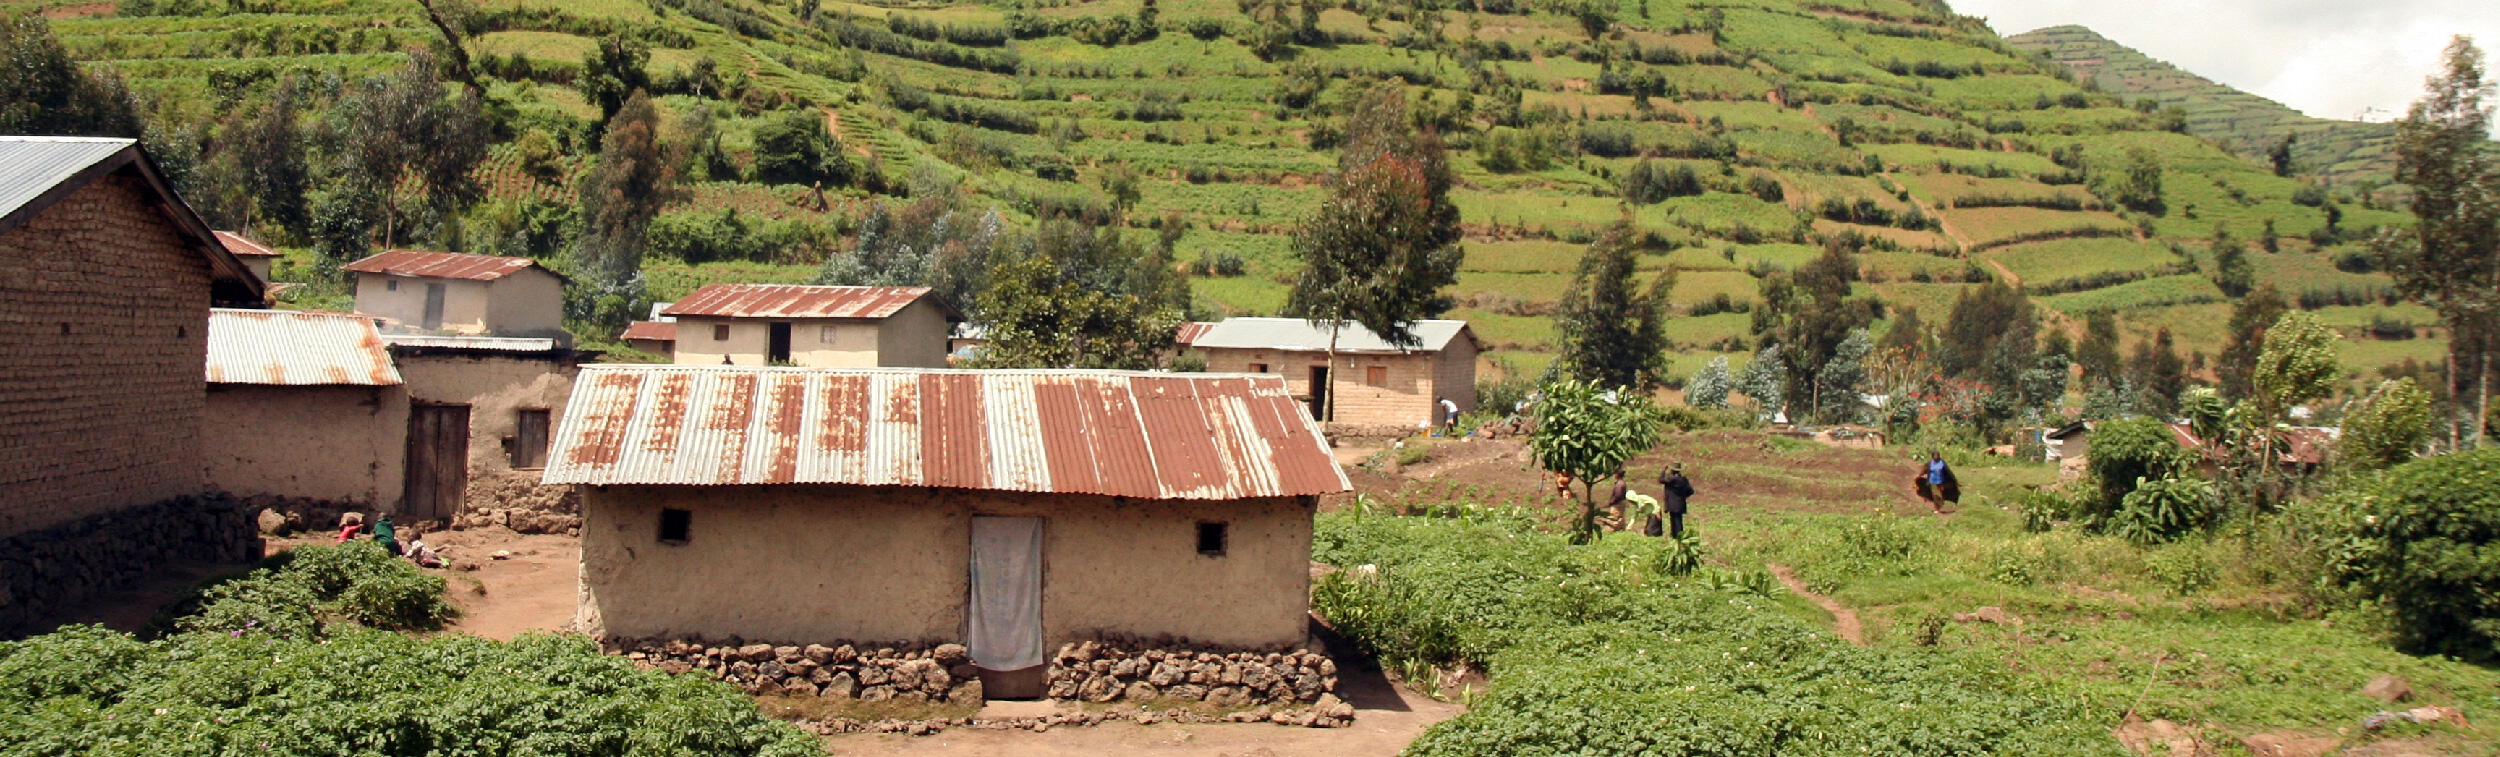 A farm in Rwanda. 